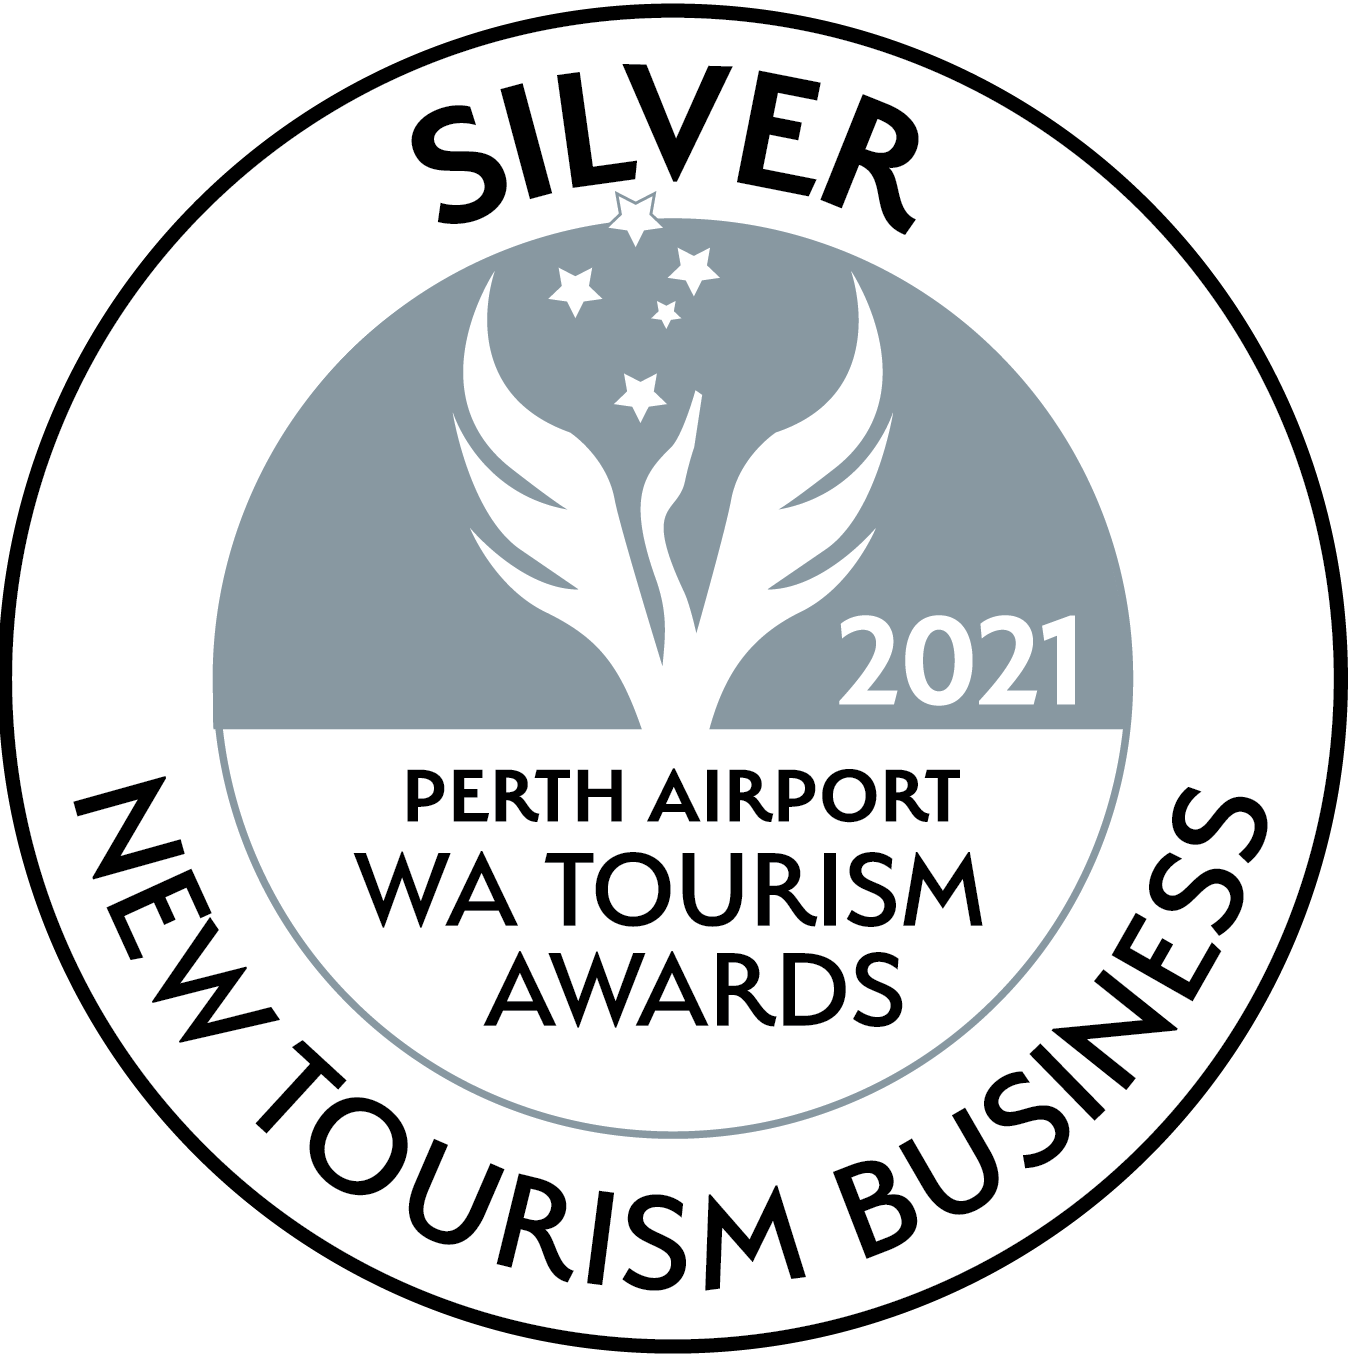 2021 tourism award